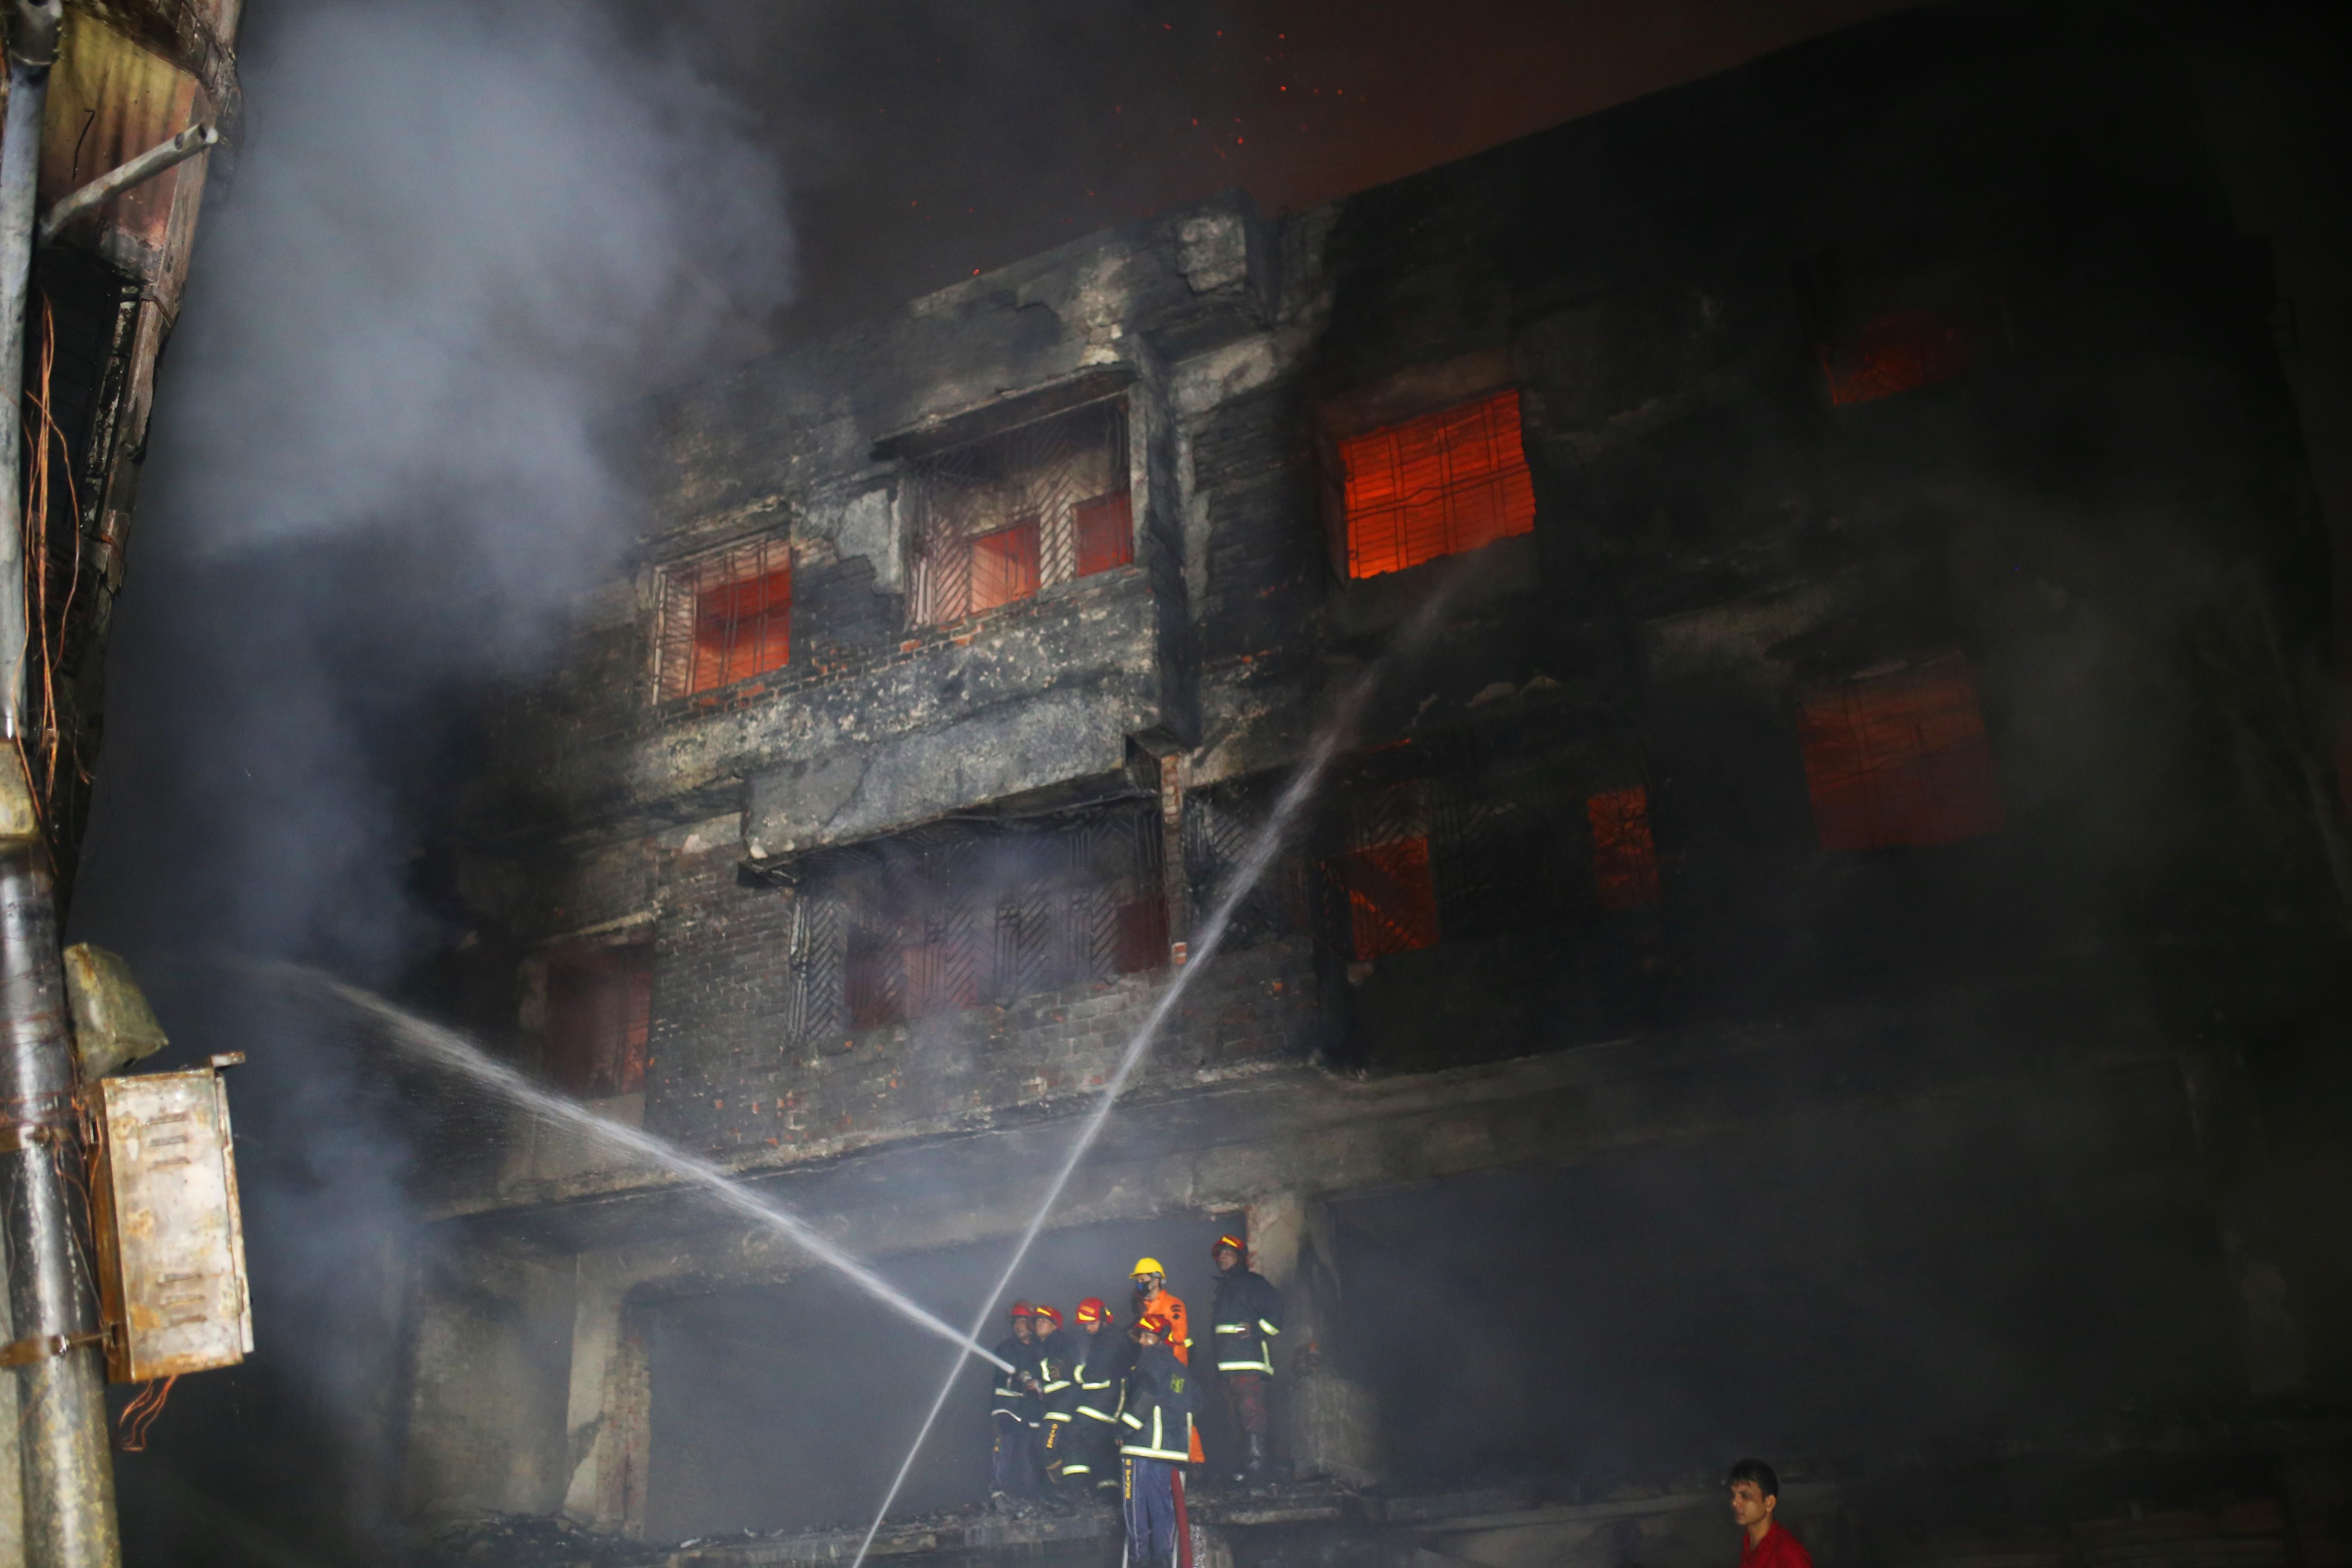  Пожежа в Бангладеш 21.02.2019: загинули 81 осіб - фото і відео пожежі